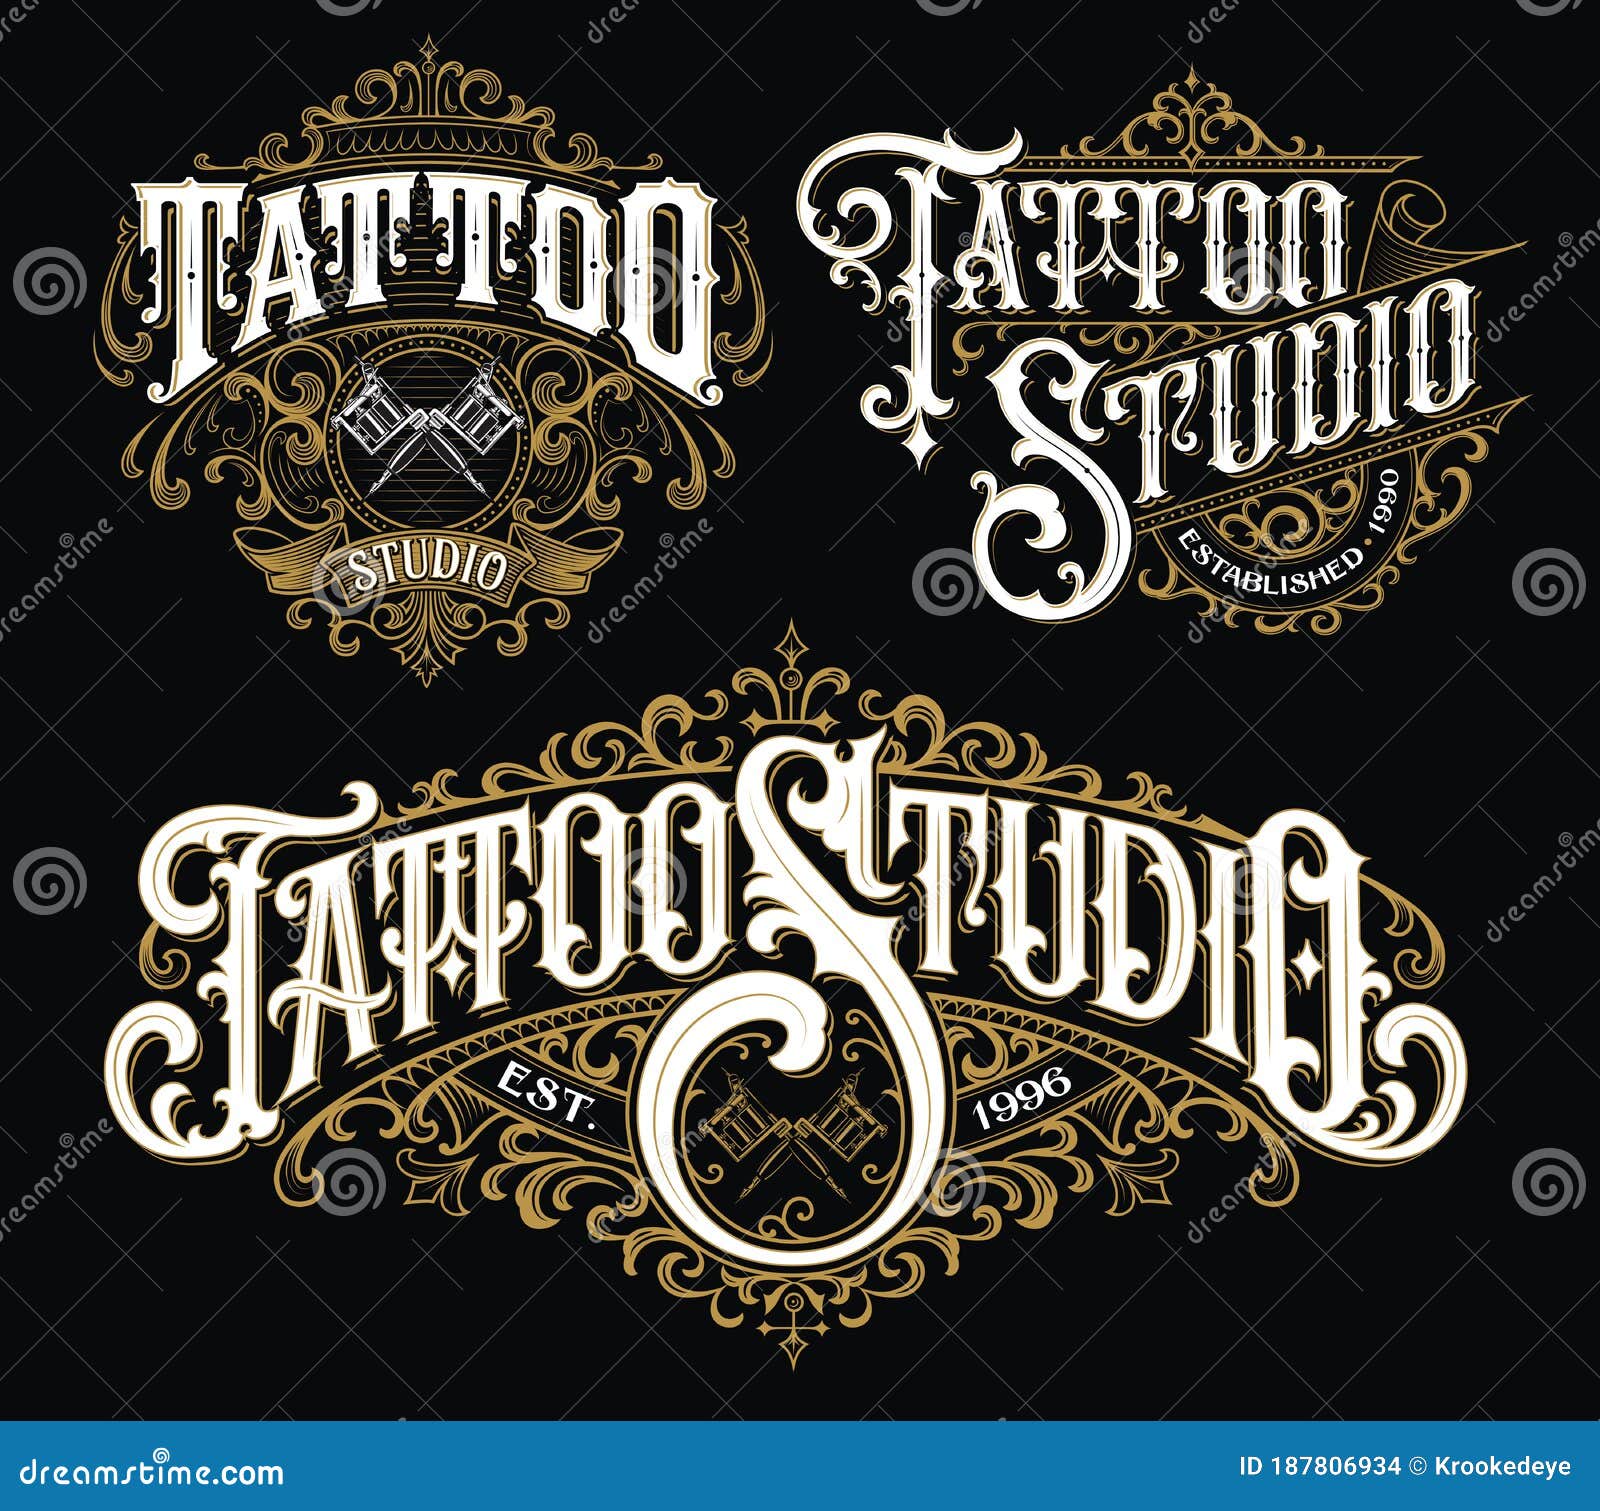 Tattoo Lettering Stock Illustrations – 12,205 Tattoo Lettering Stock  Illustrations, Vectors & Clipart - Dreamstime